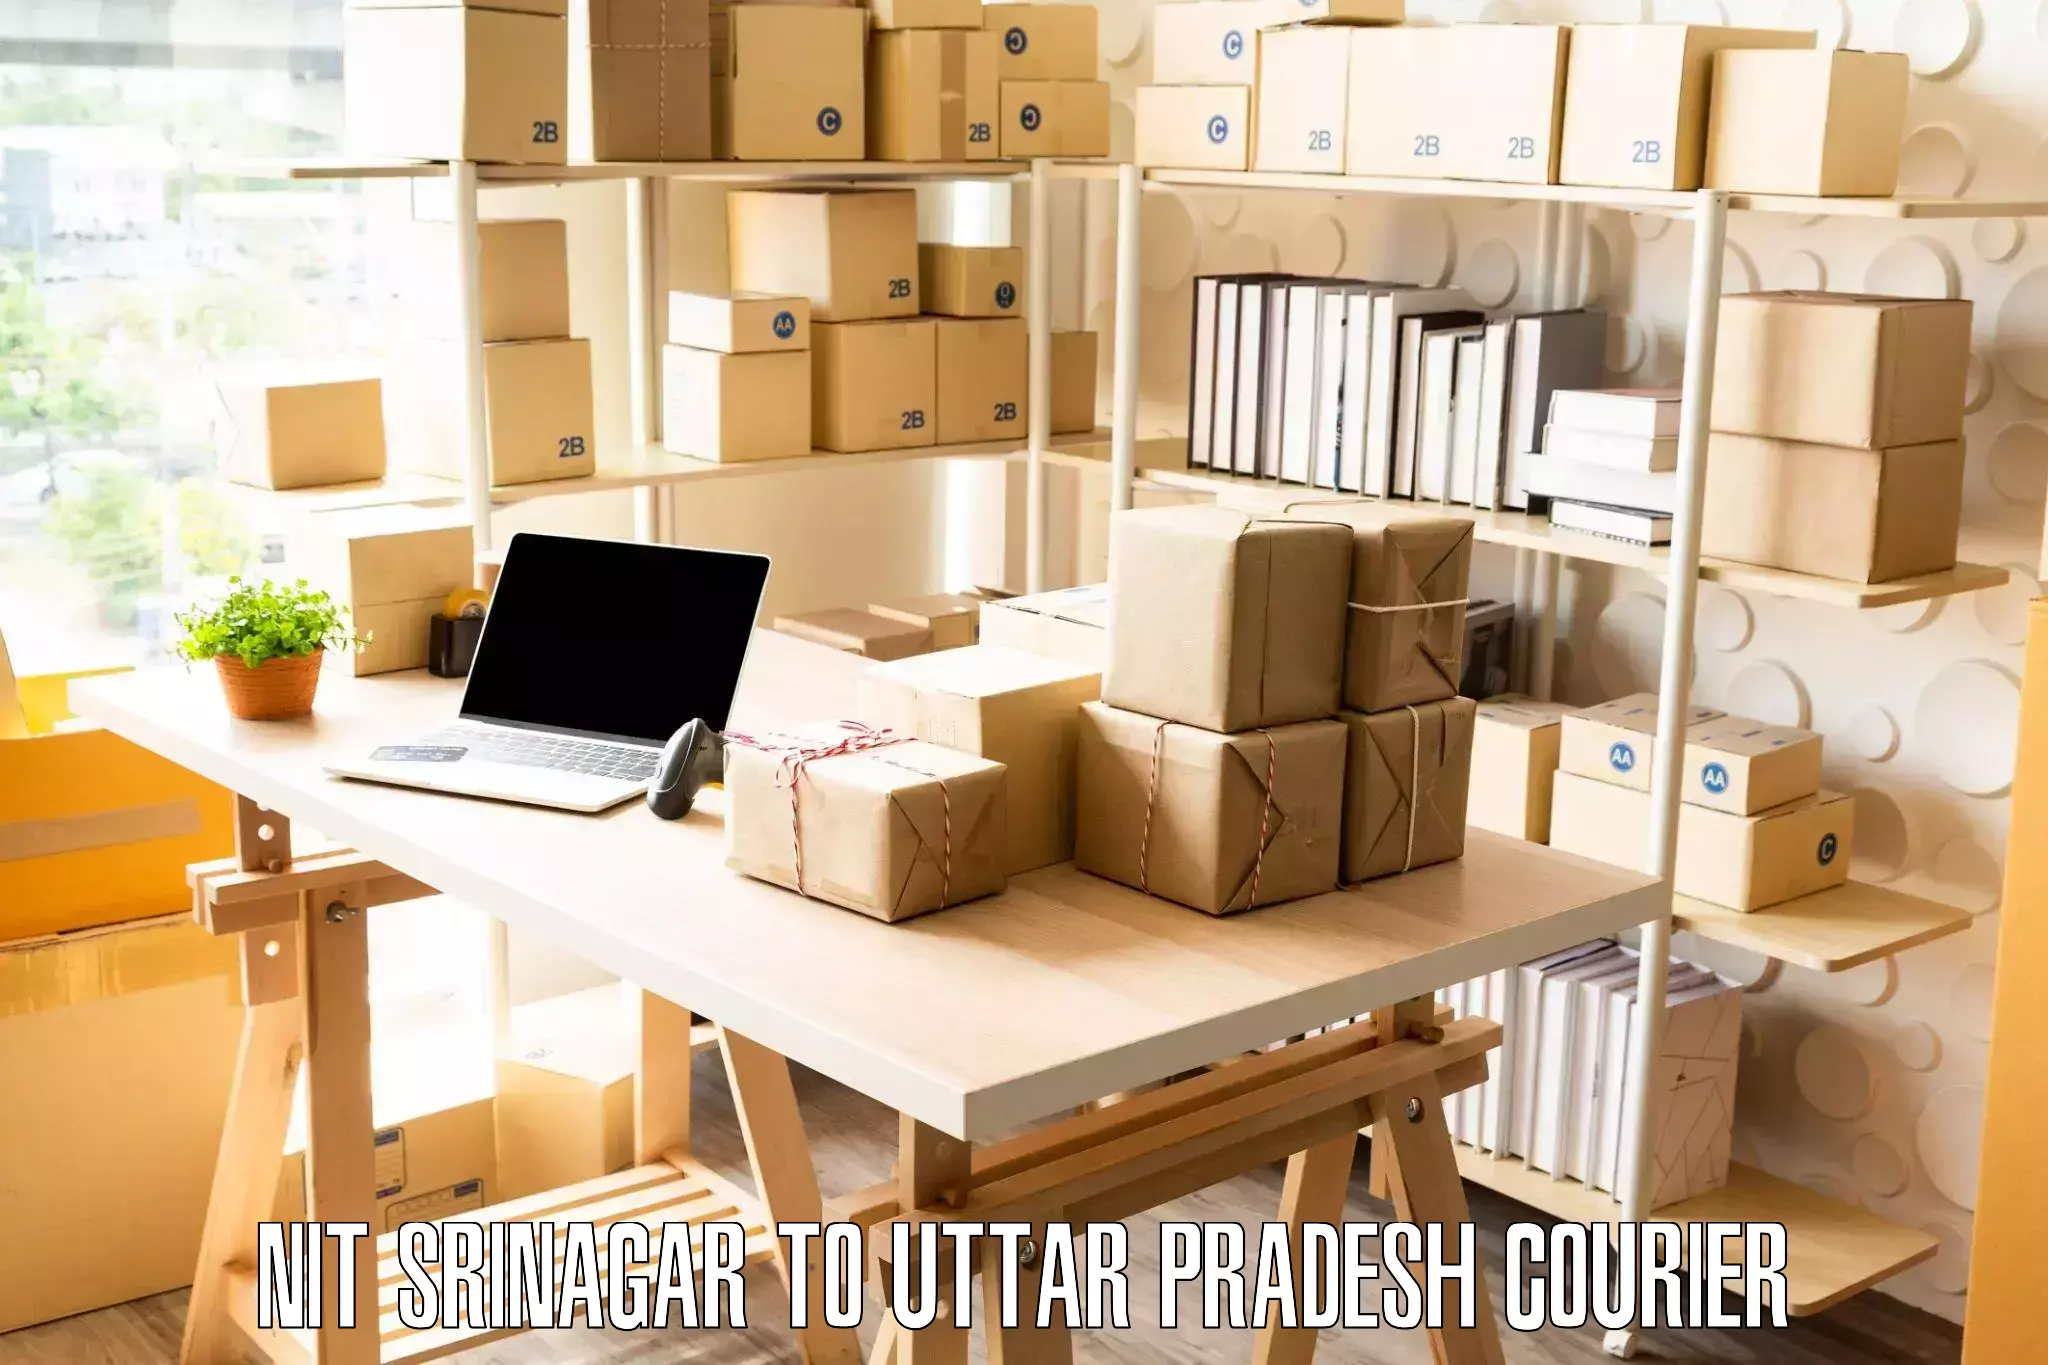 Furniture logistics NIT Srinagar to Rania